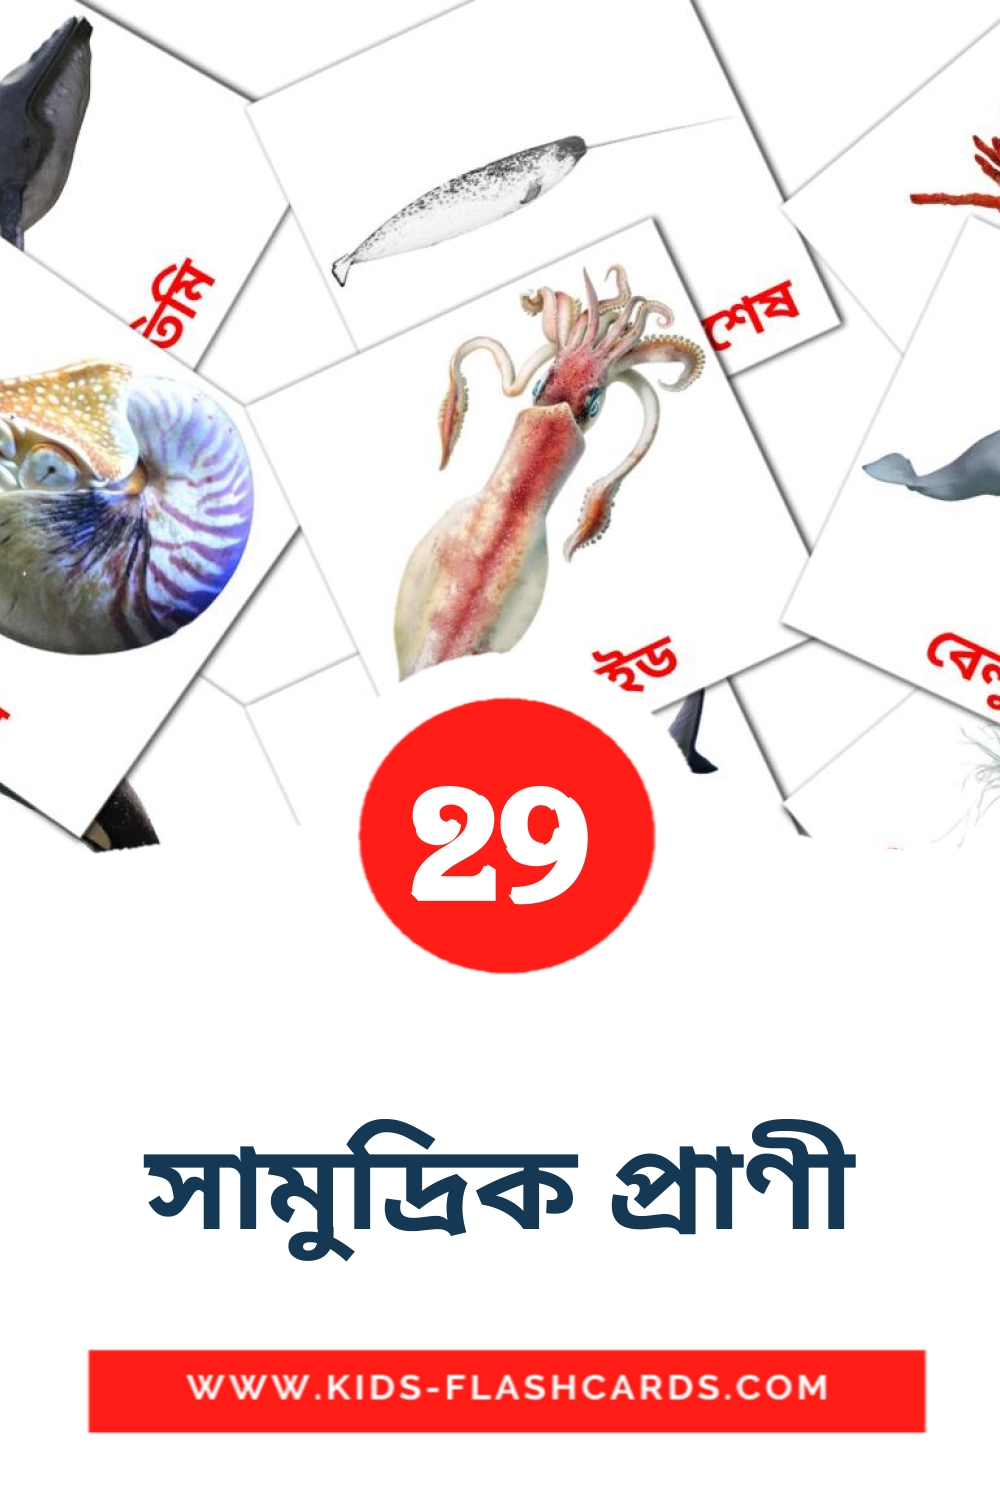 29 Cartões com Imagens de সামুদ্রিক প্রাণী para Jardim de Infância em bengali